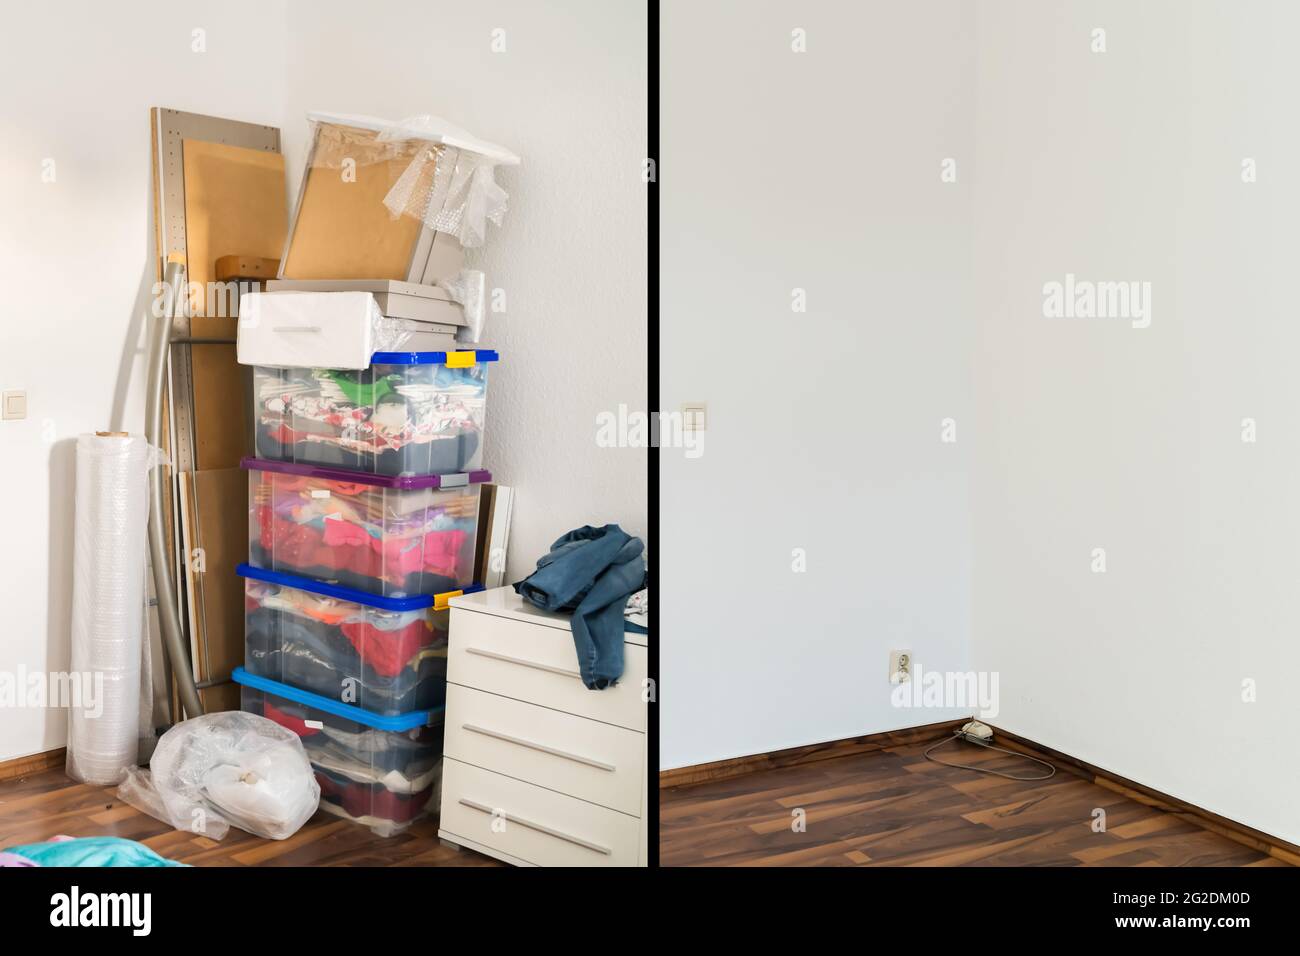 Raumaufdeckvorrichtung Vor Und Nach Dem Zimmer. Unordentliches Haus Stockfoto